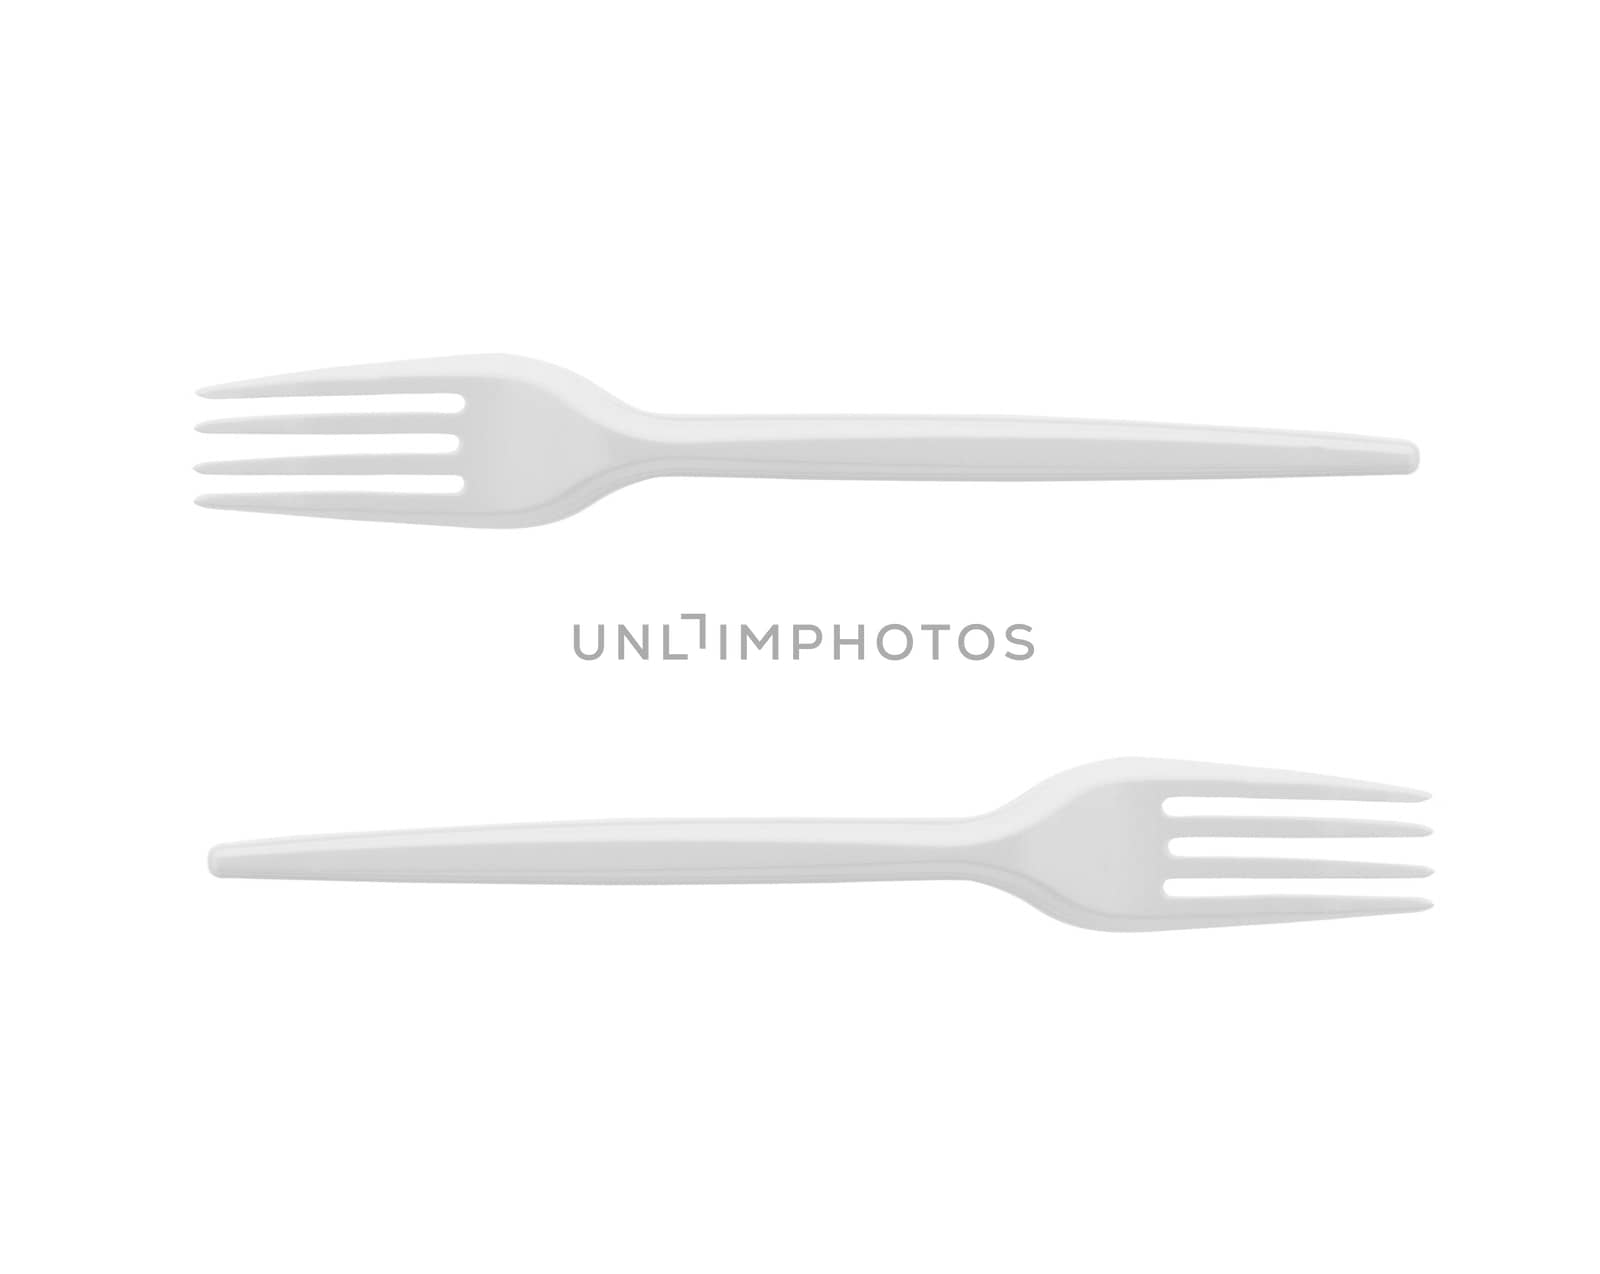 Plastic Forks on White Background